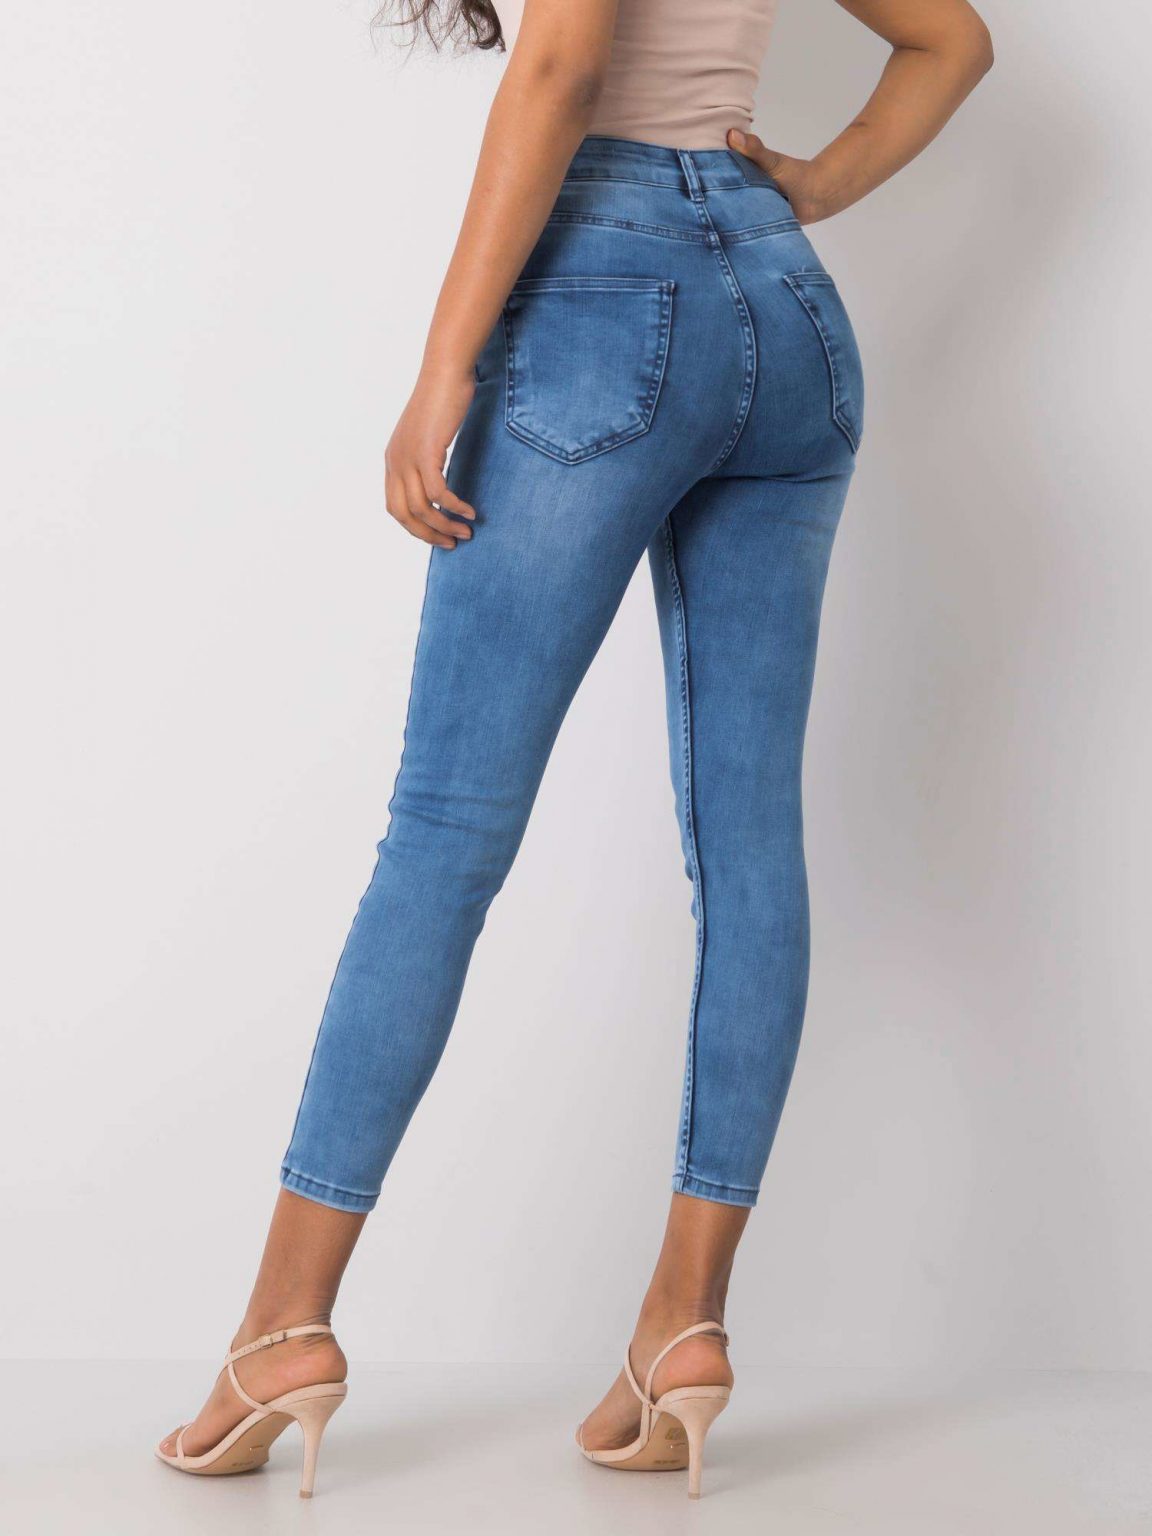 Niebieskie spodnie jeansowe Latoya